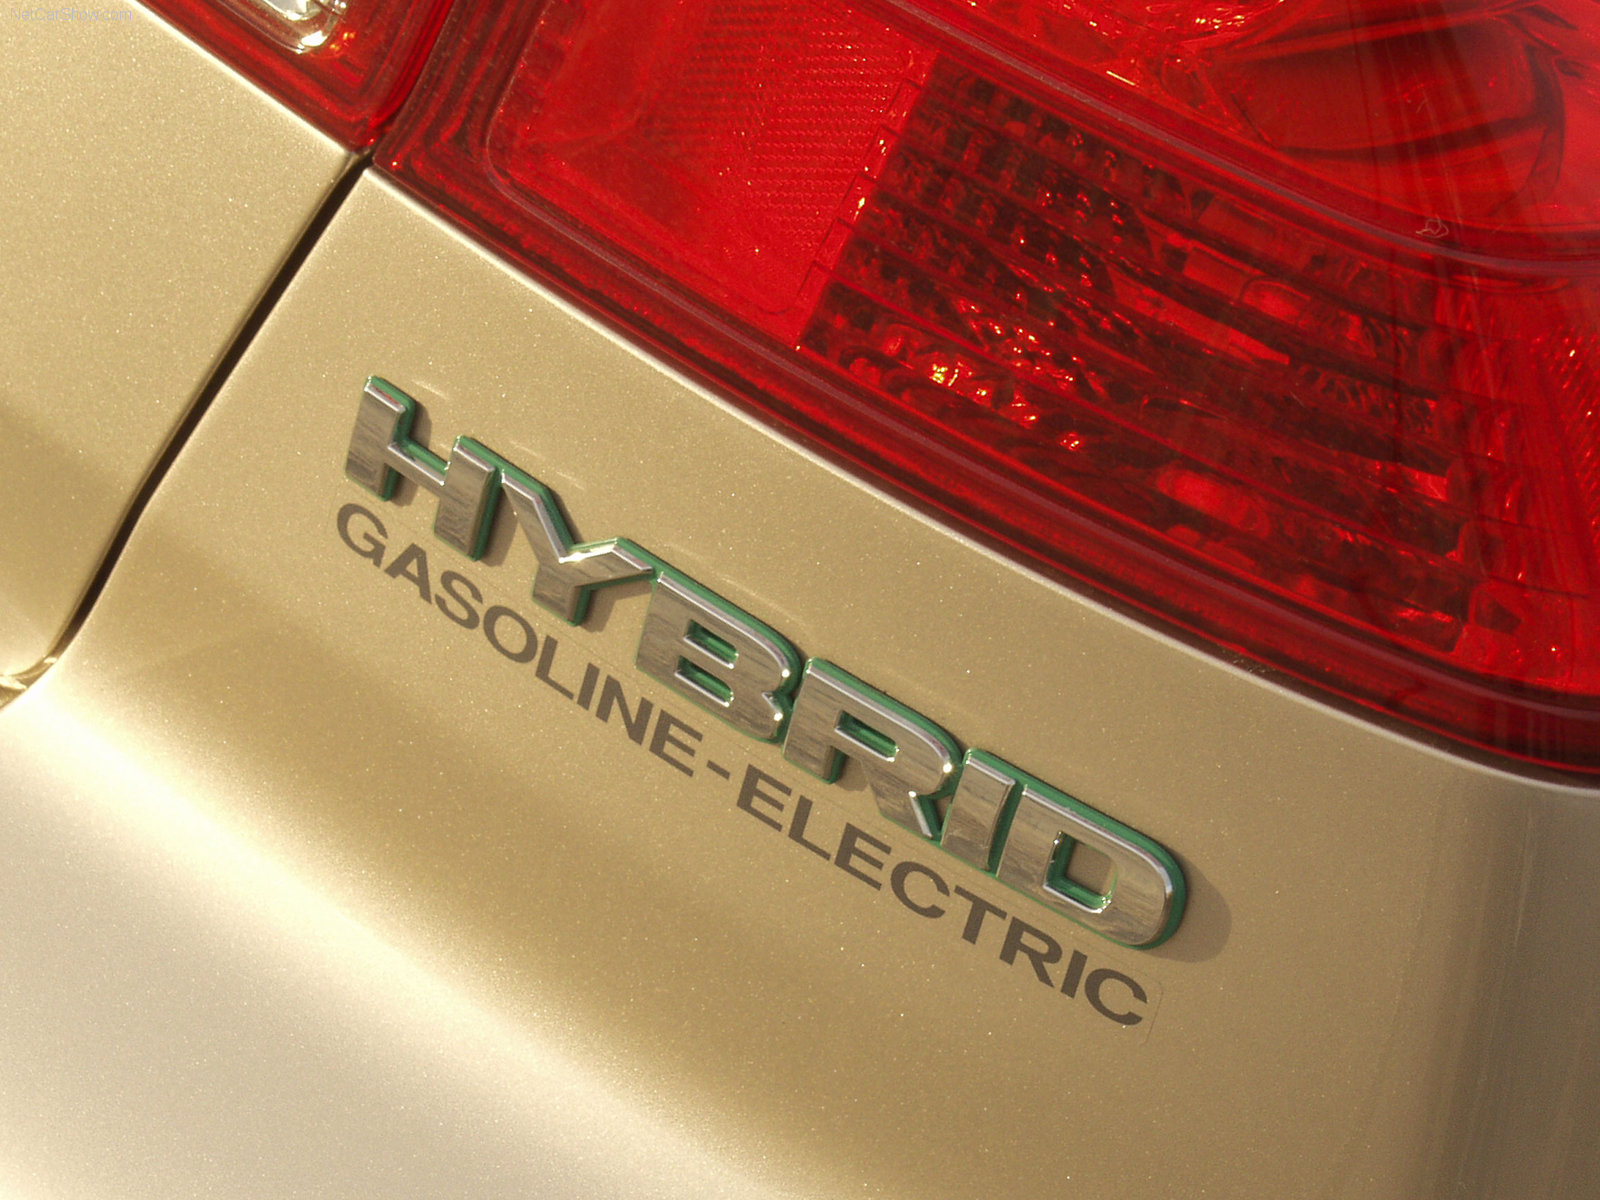 Honda Civic Hybrid 2003 Honda-Civic_Hybrid-2003-1600-25